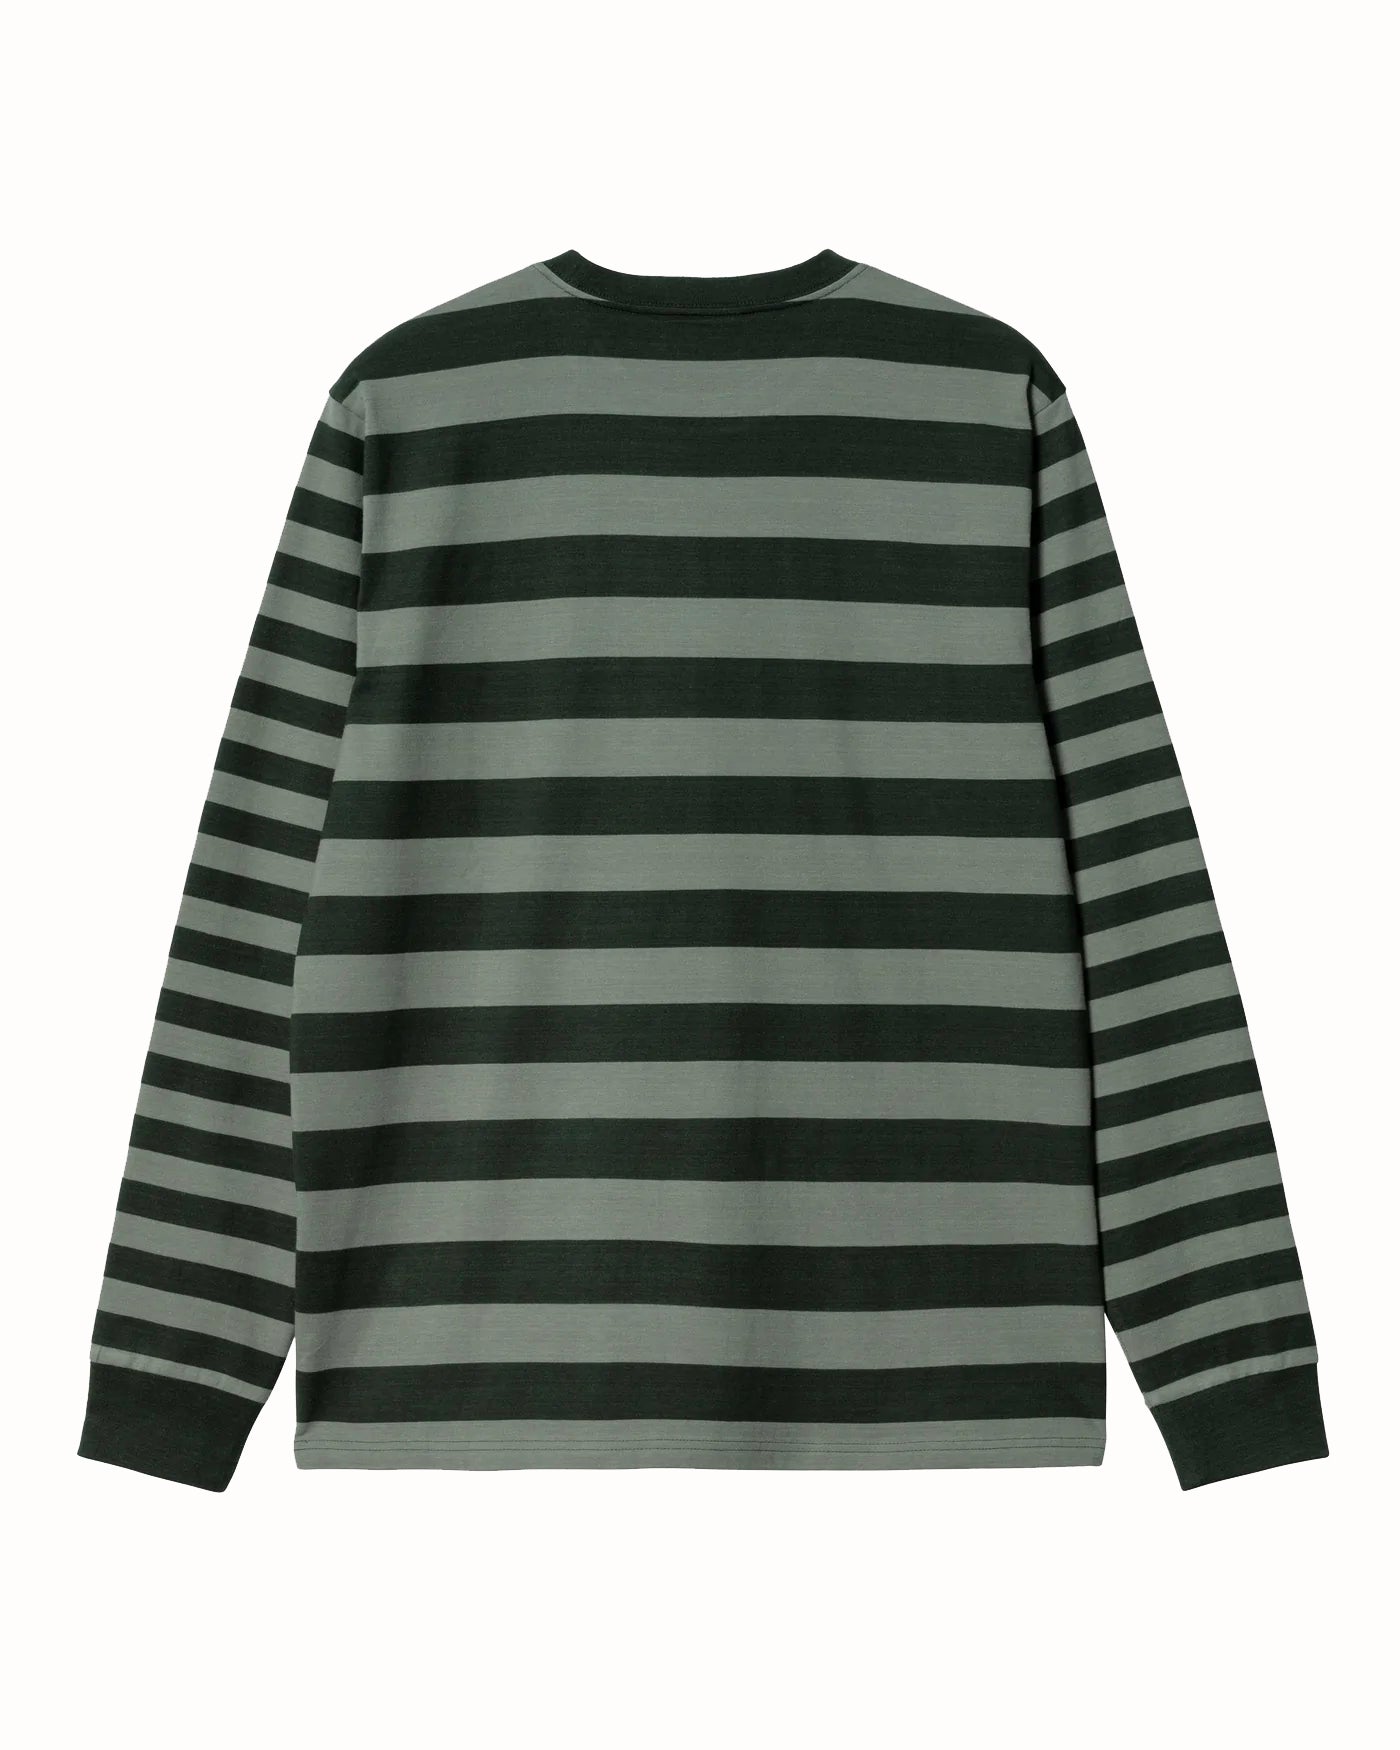 L/S Merrick Striped T-Shirt